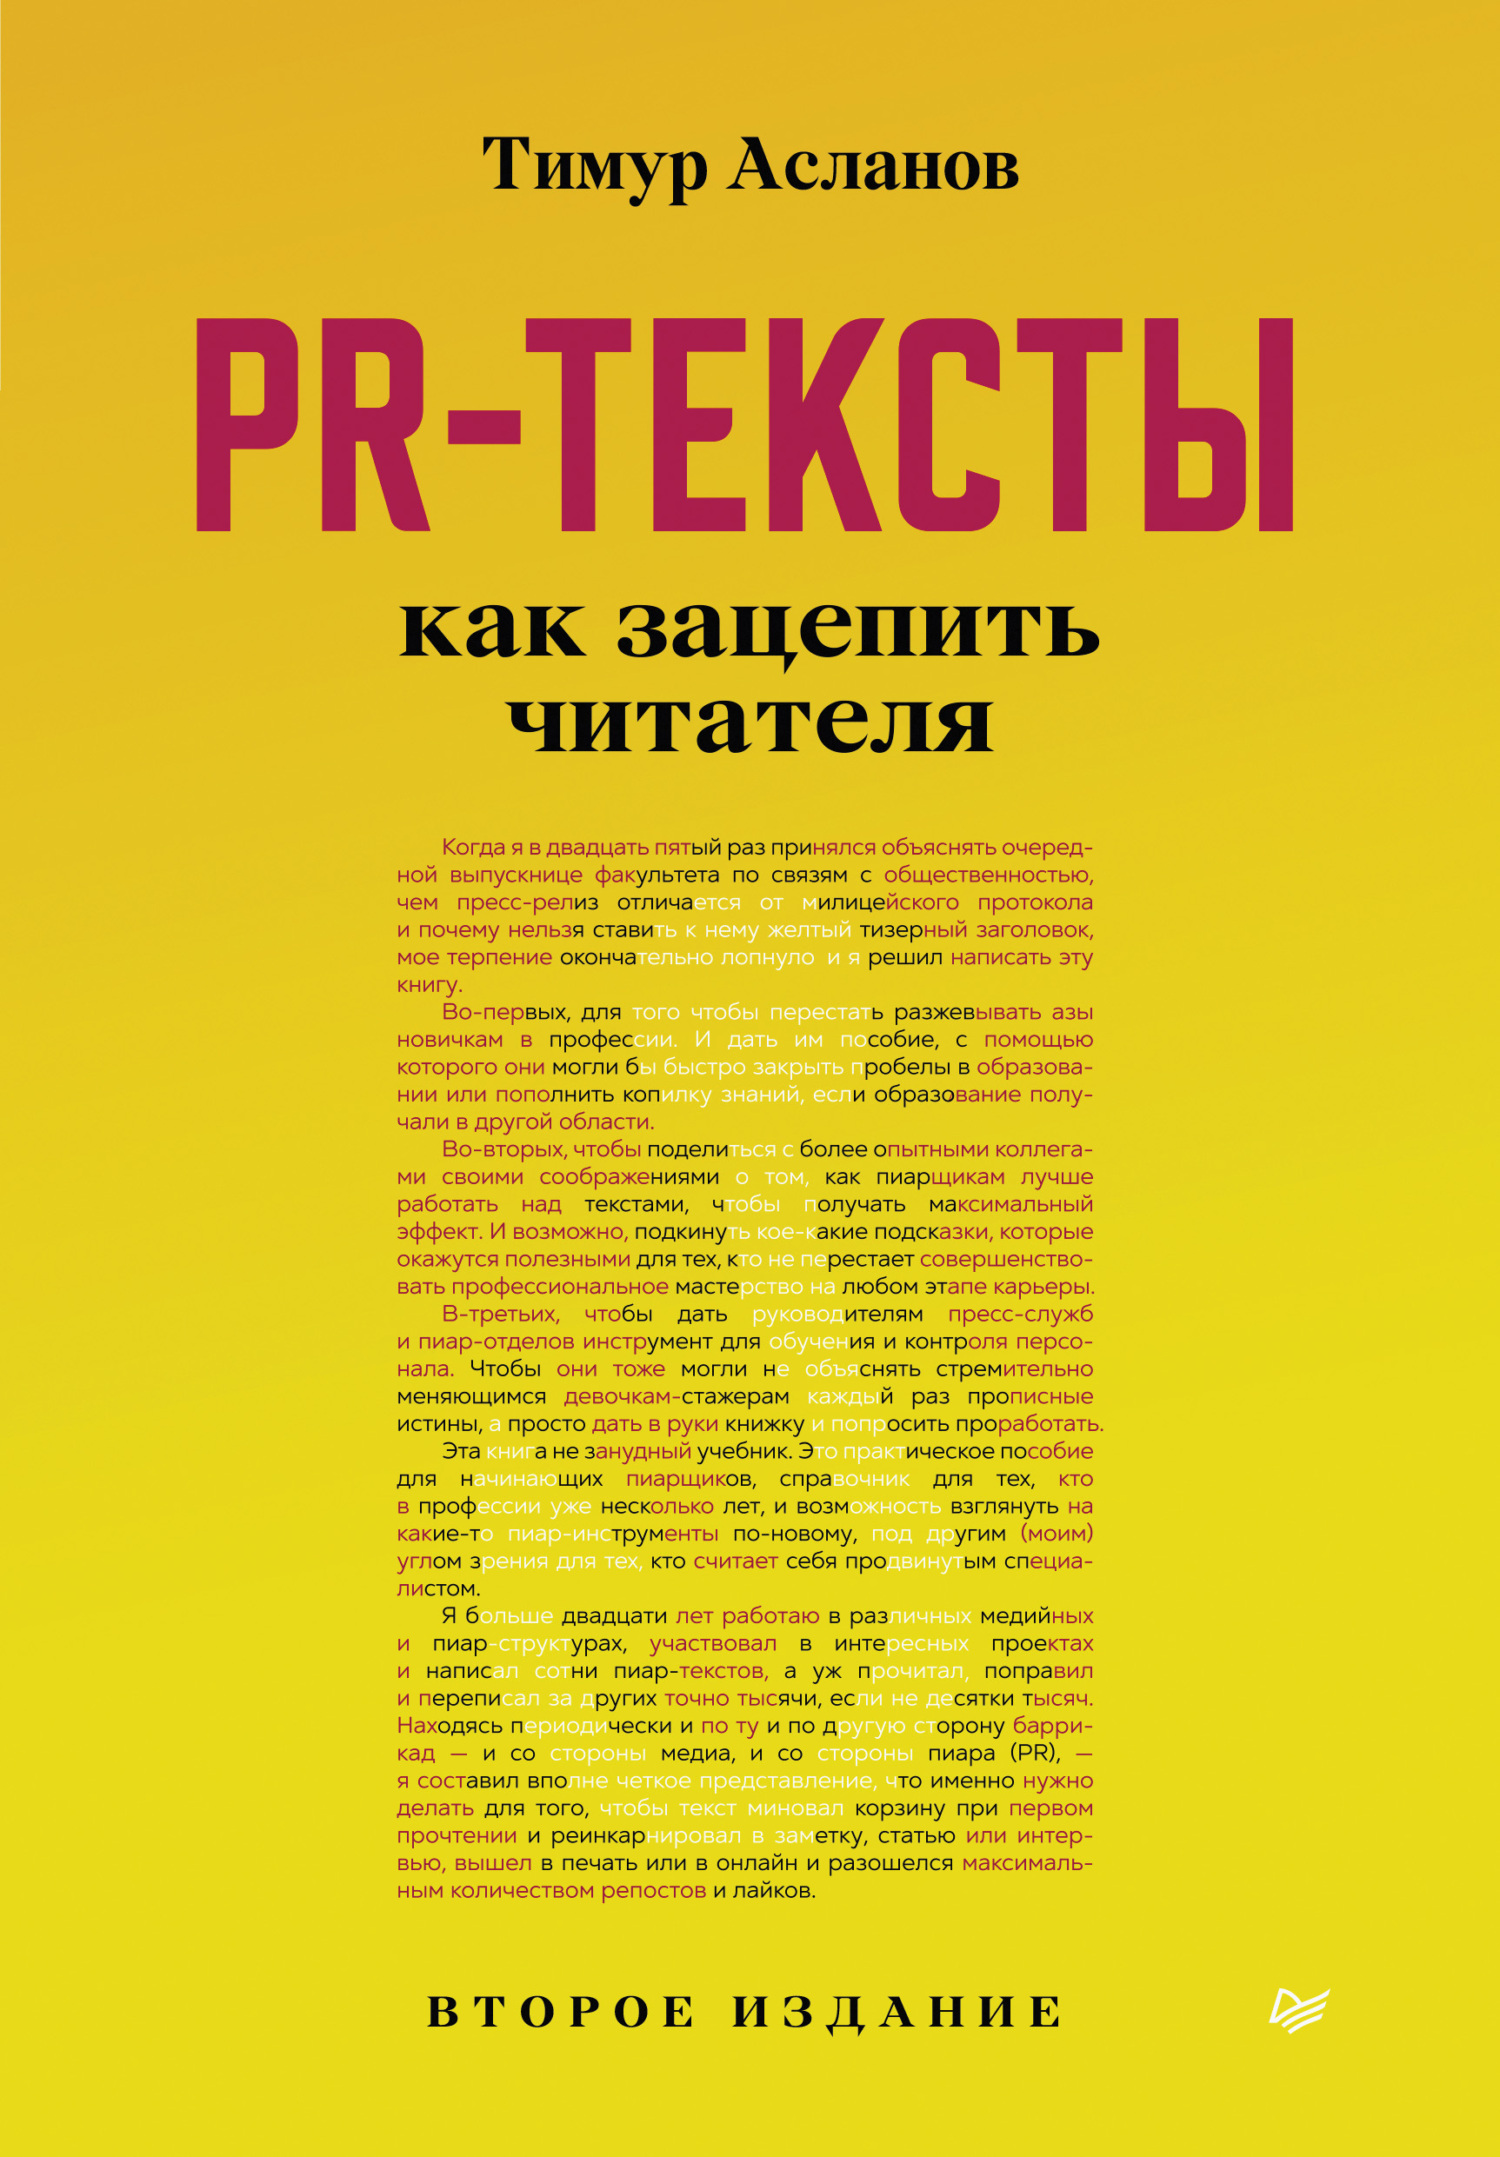 Книга Бизнес-психология PR-тексты. Как зацепить читателя созданная Тимур Асланов может относится к жанру PR, копирайтинг. Стоимость электронной книги PR-тексты. Как зацепить читателя с идентификатором 68079958 составляет 449.00 руб.